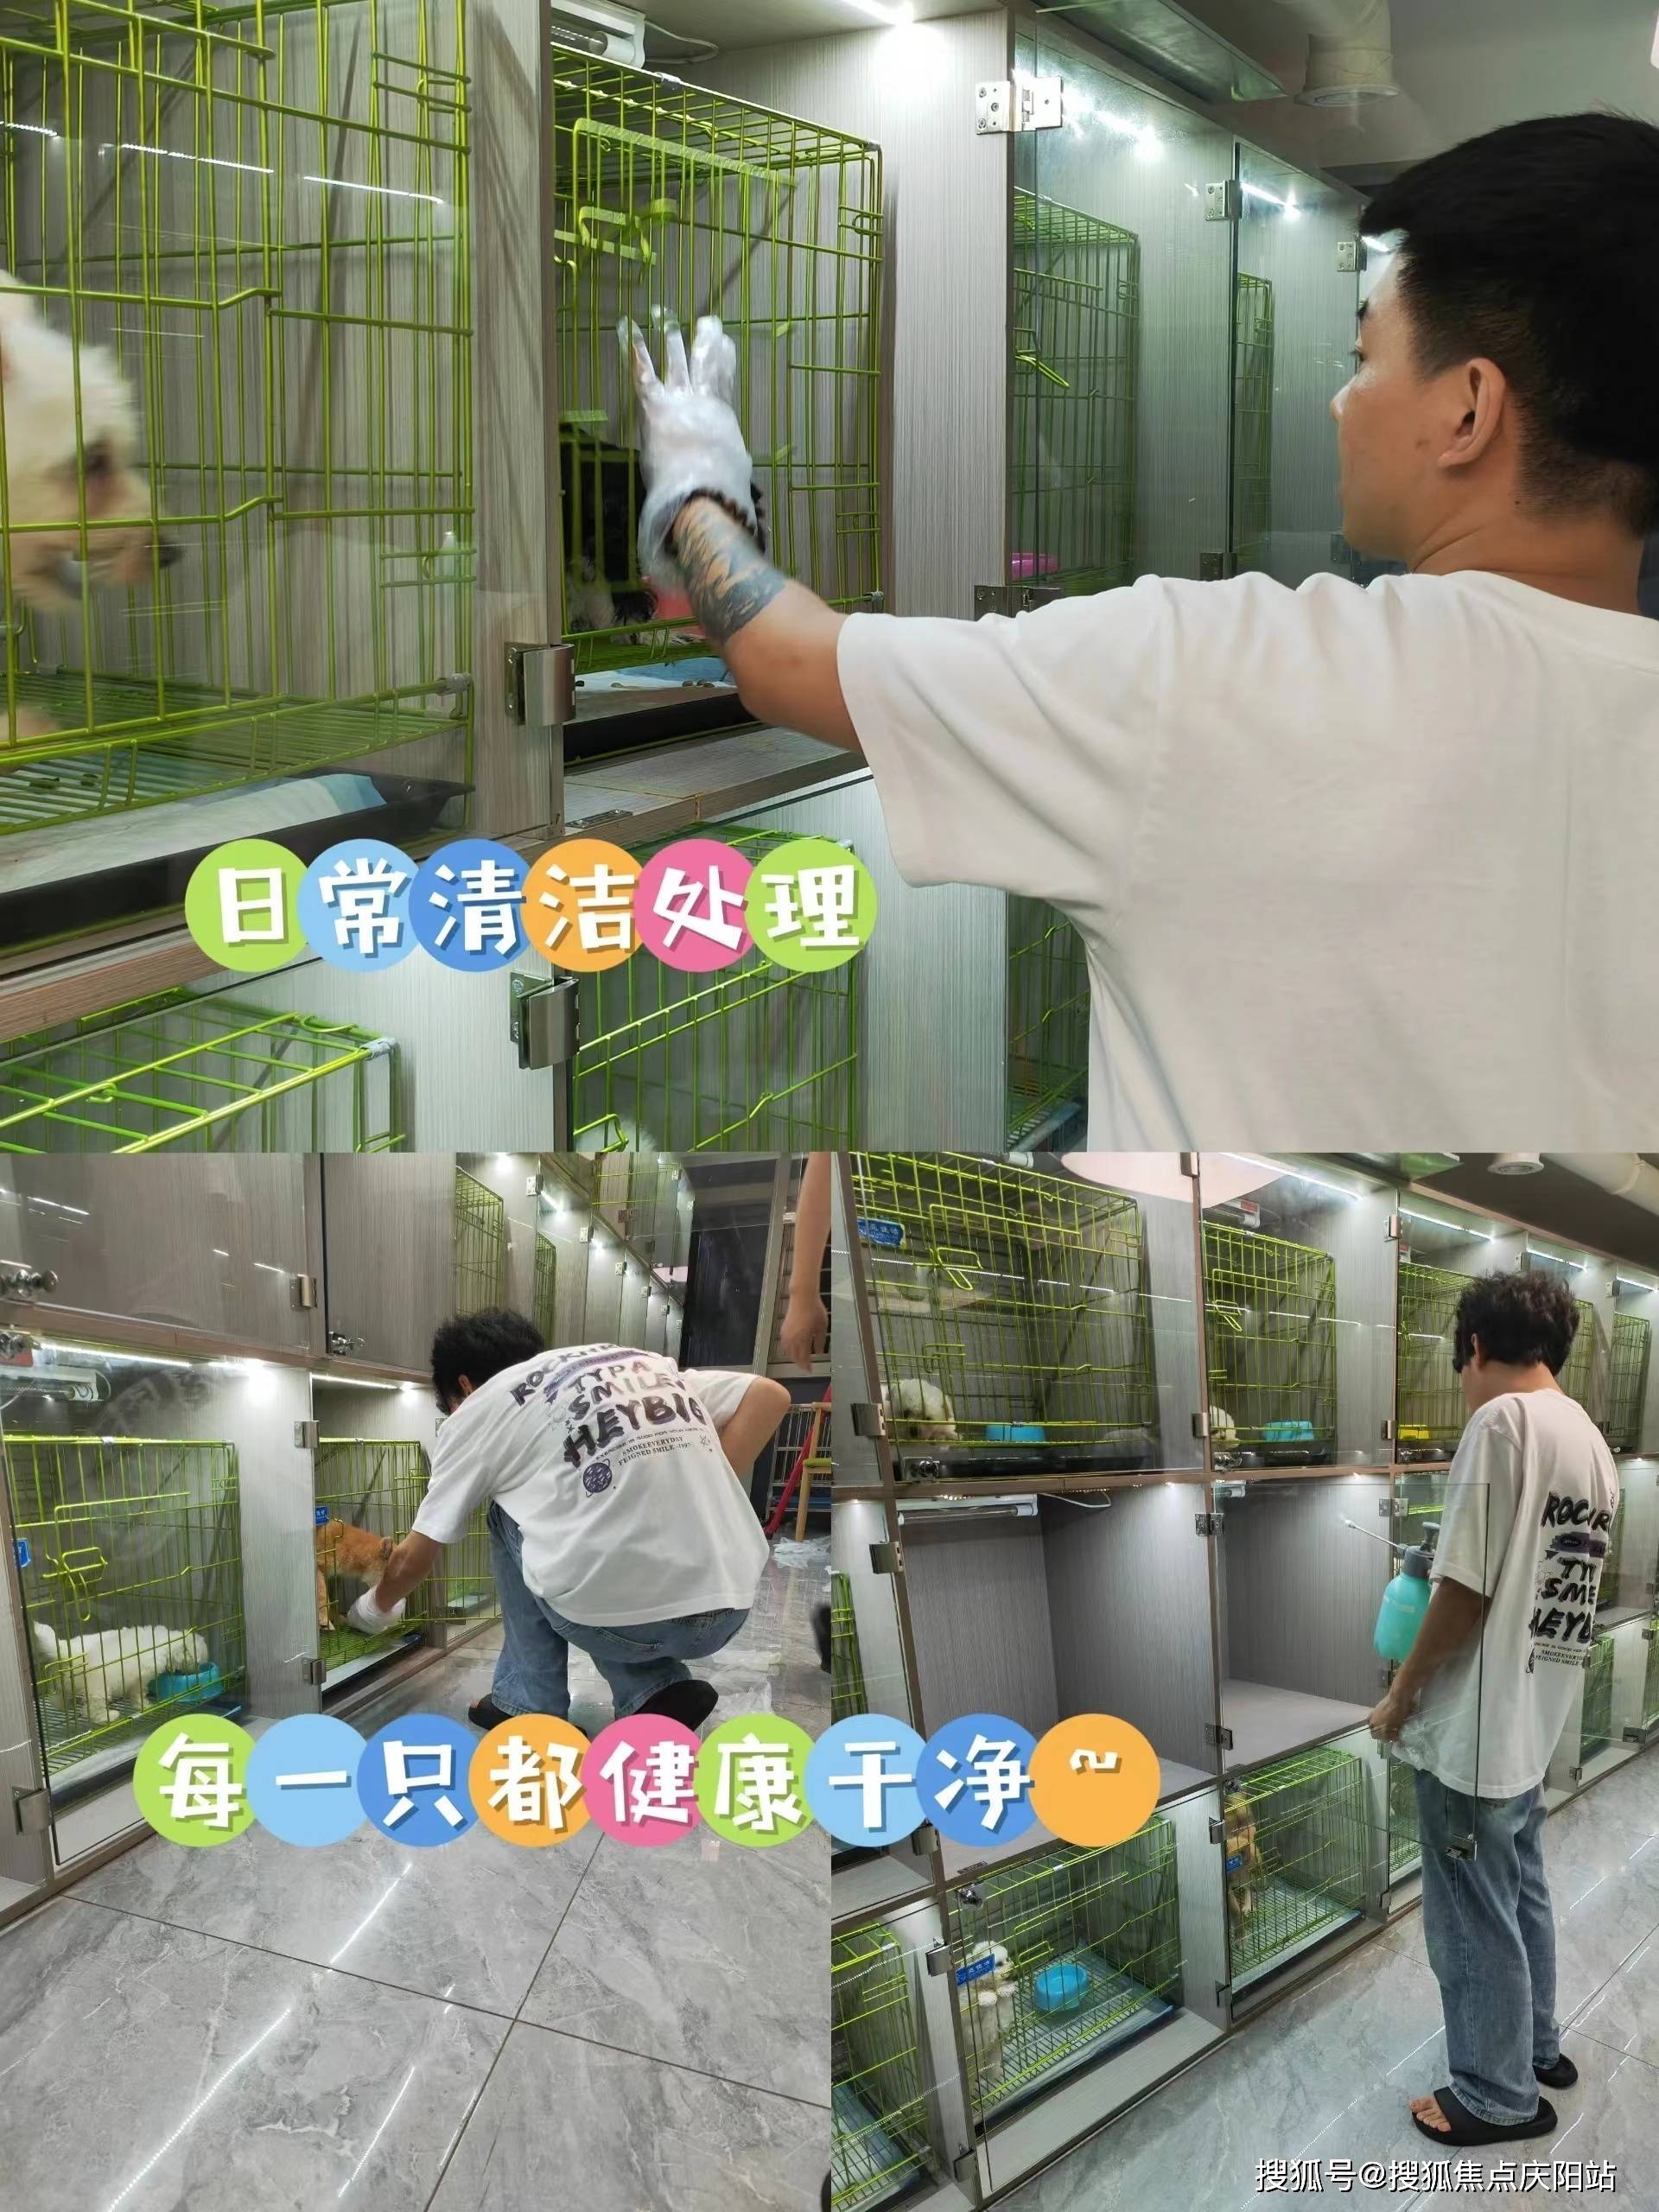 上海浦东区买英短蓝白猫丨上海卖英短蓝白猫的宠物店丨上海福安家猫猫